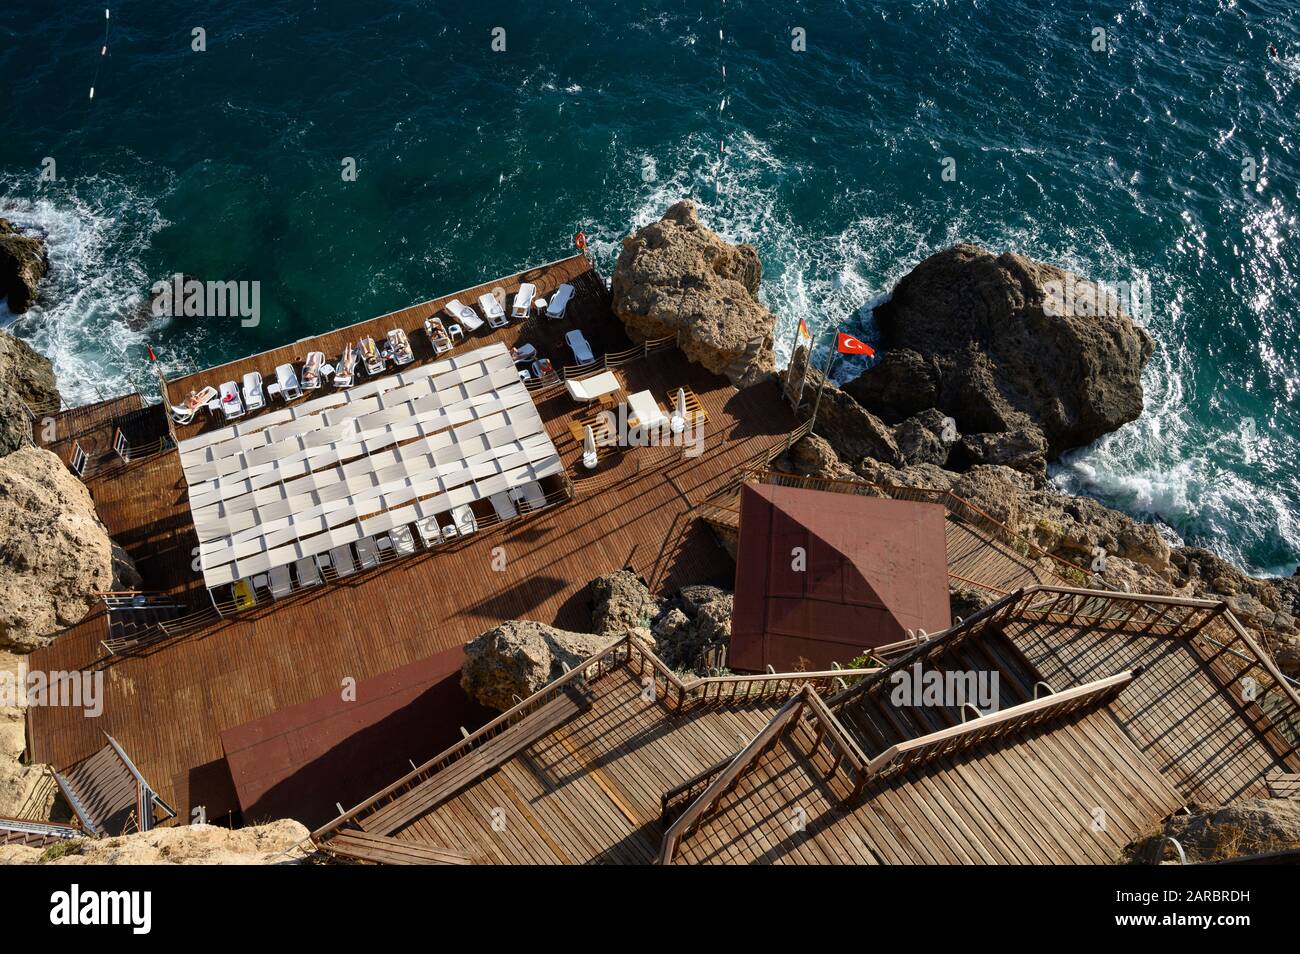 OZ Hotels in Antalya, Turchia - Mare resort terrazza solarium costruita sulle scogliere sulla costa mediterranea Foto Stock